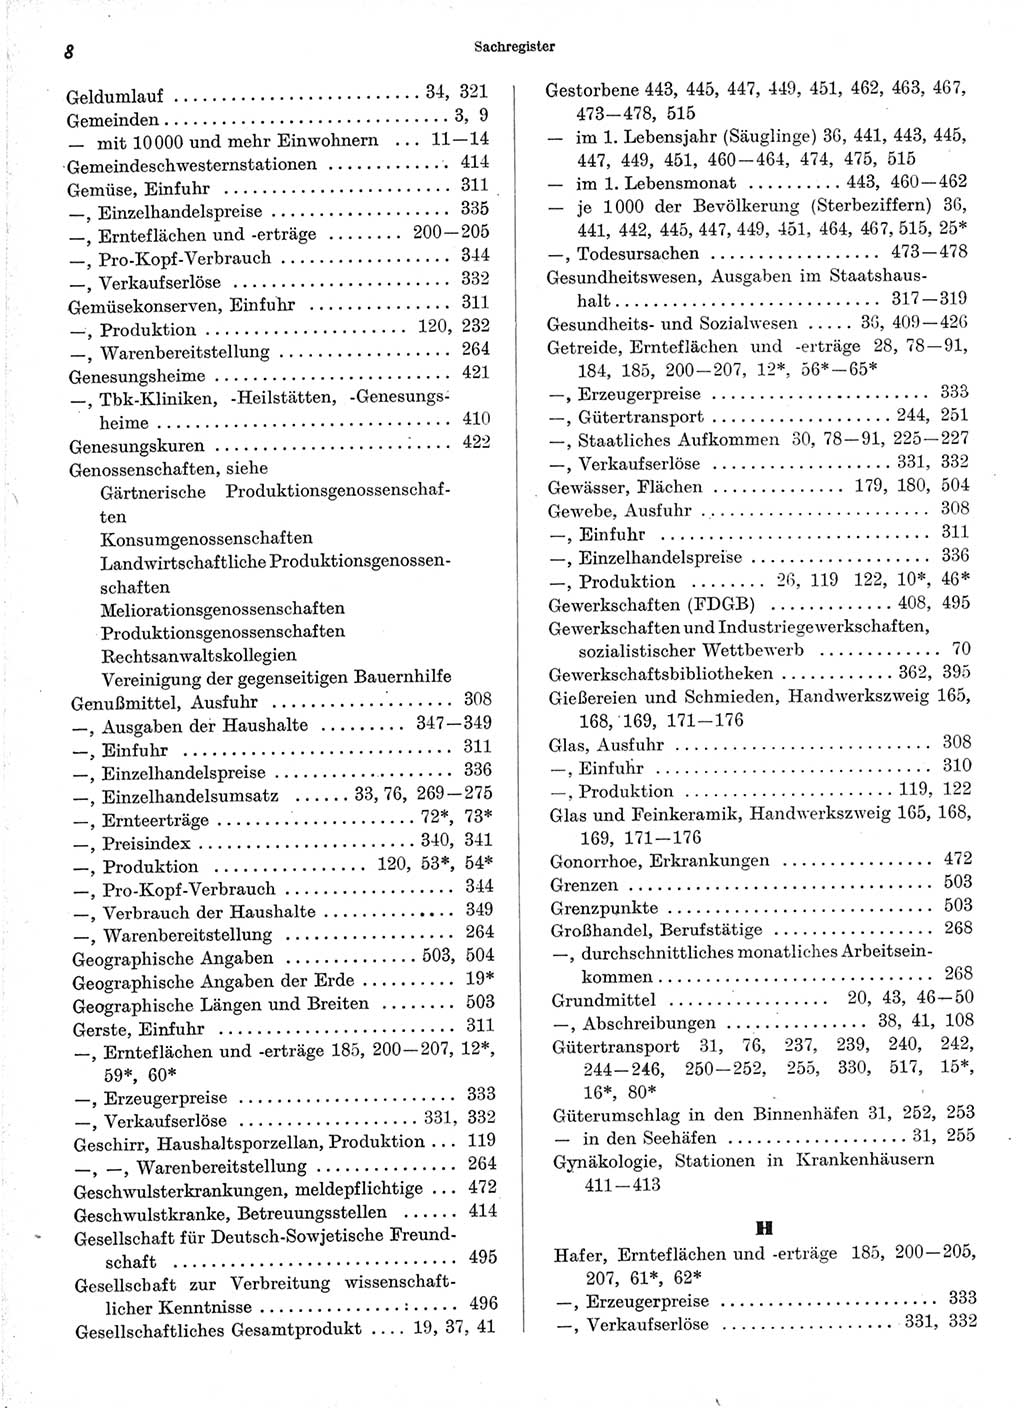 Statistisches Jahrbuch der Deutschen Demokratischen Republik (DDR) 1971, Seite 8 (Stat. Jb. DDR 1971, S. 8)